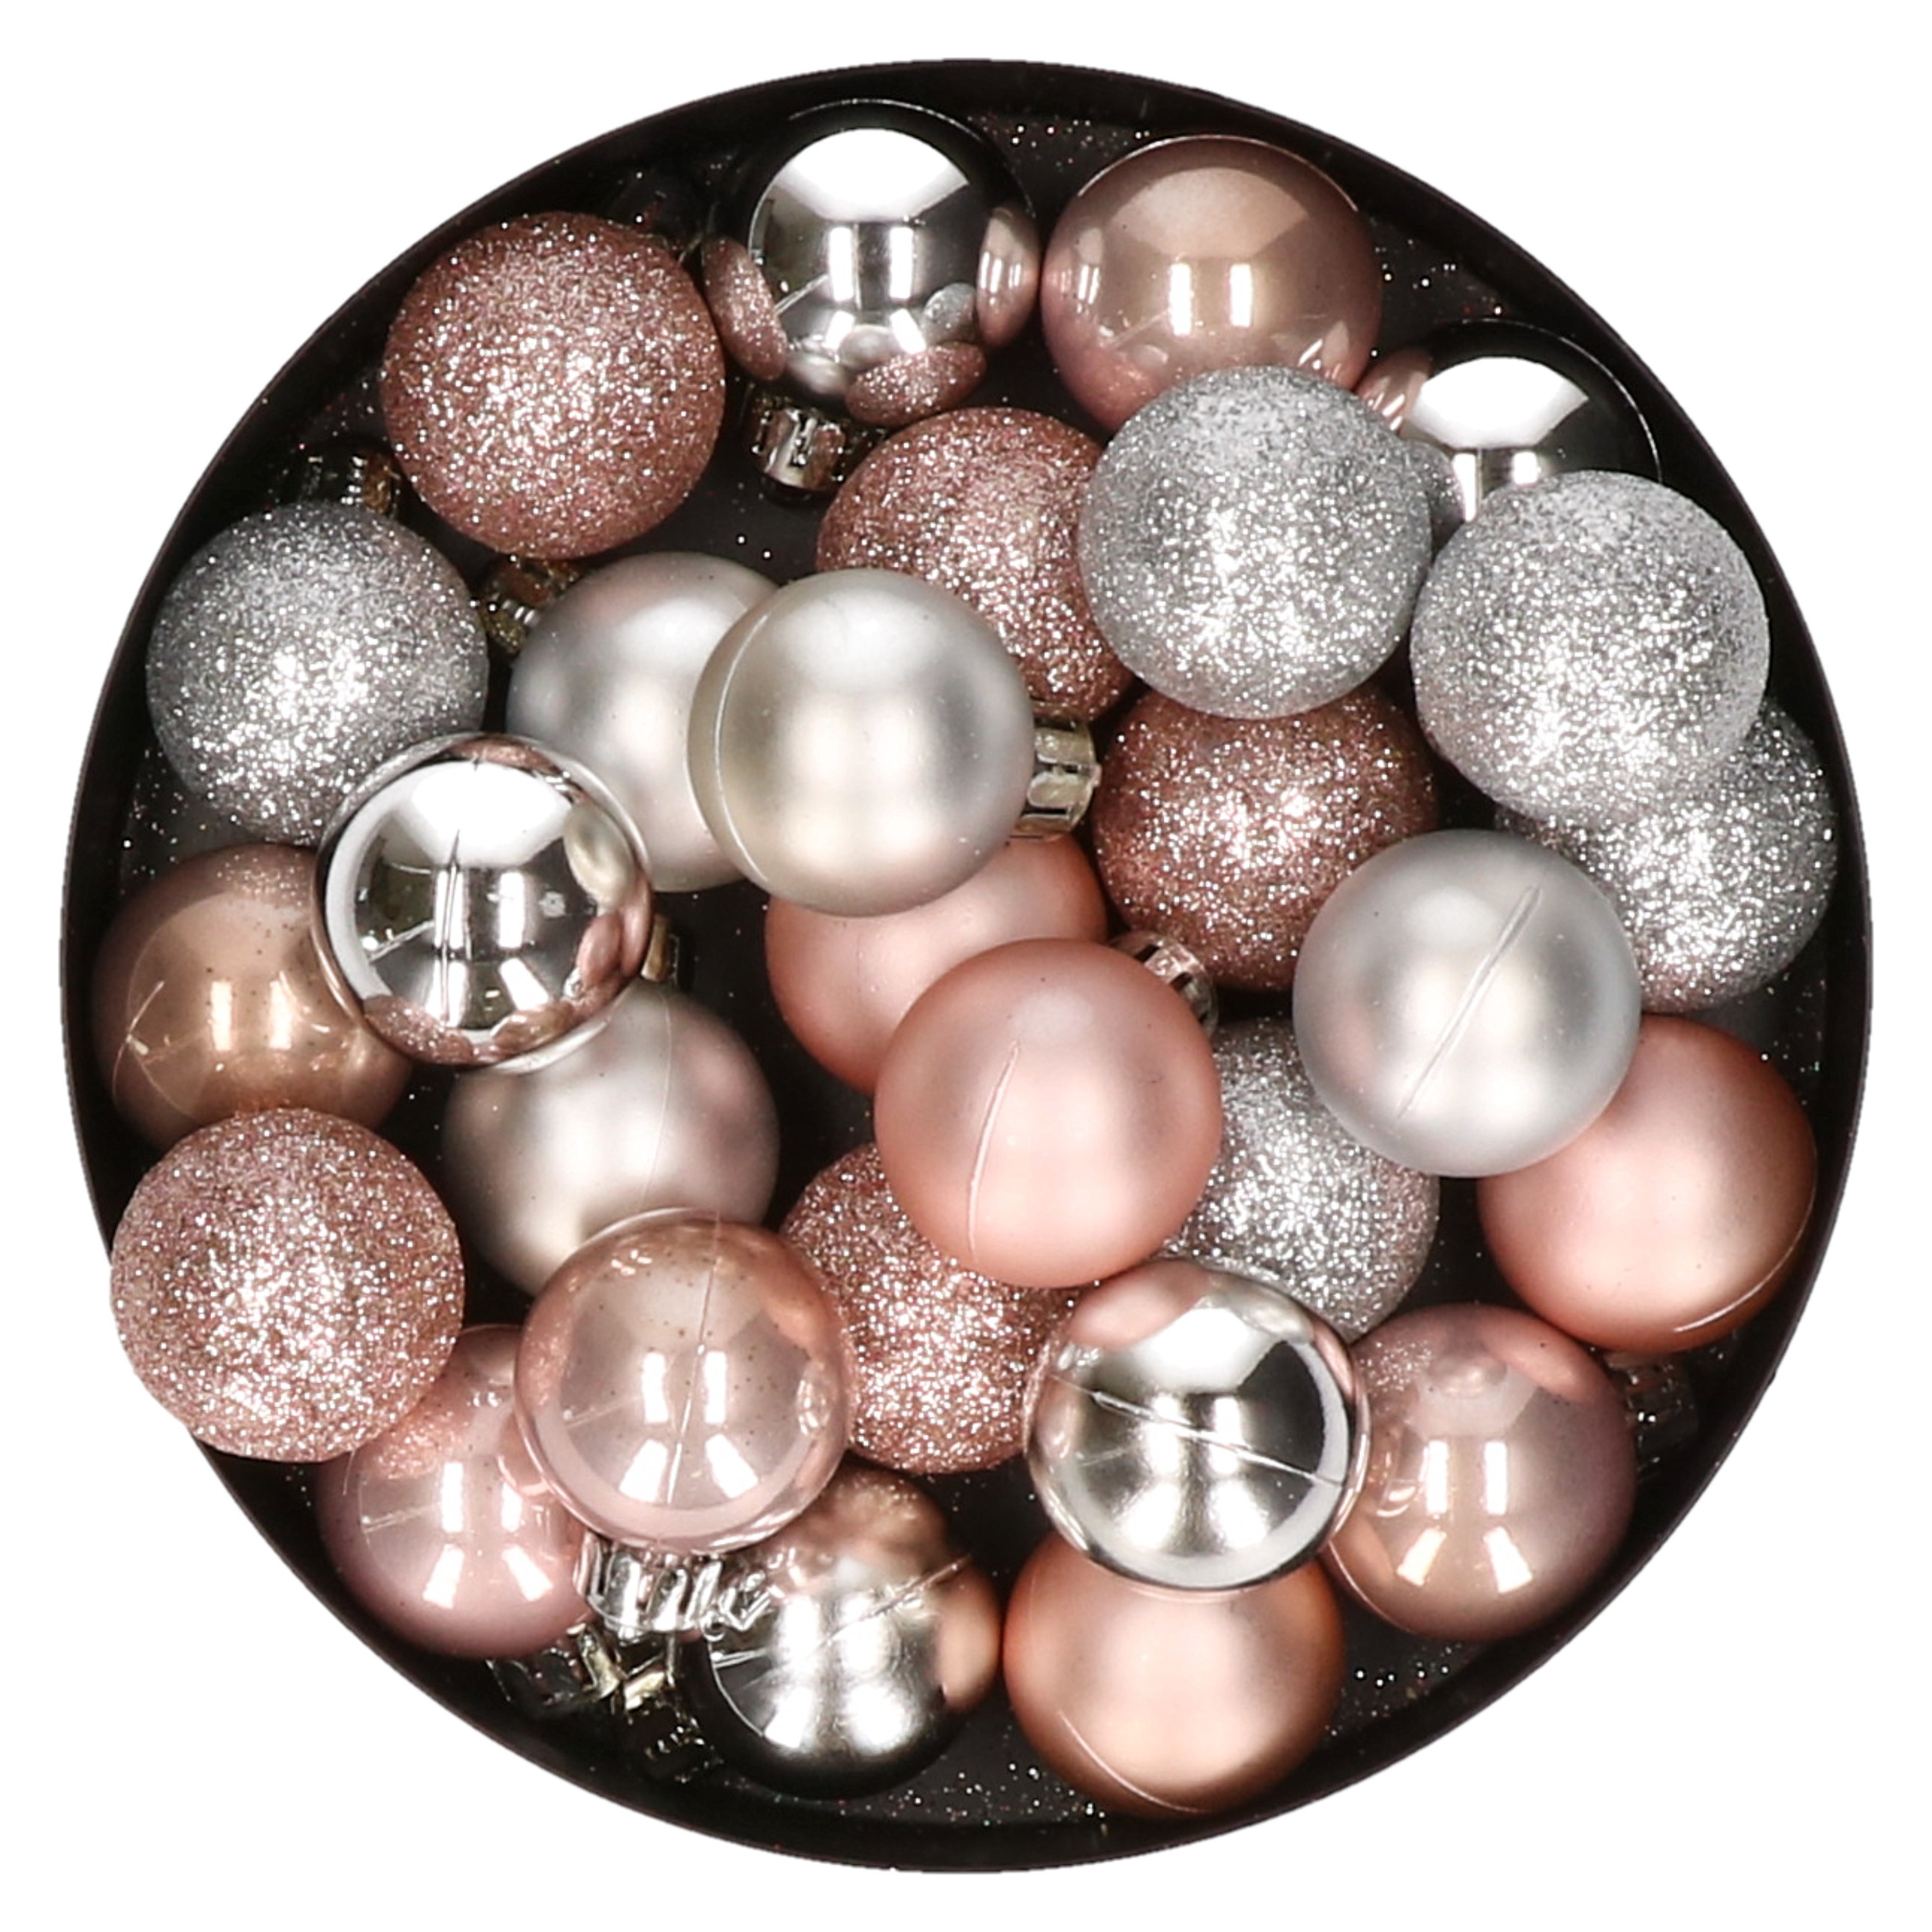 28x stuks kunststof kerstballen lichtroze en zilver mix 3 cm